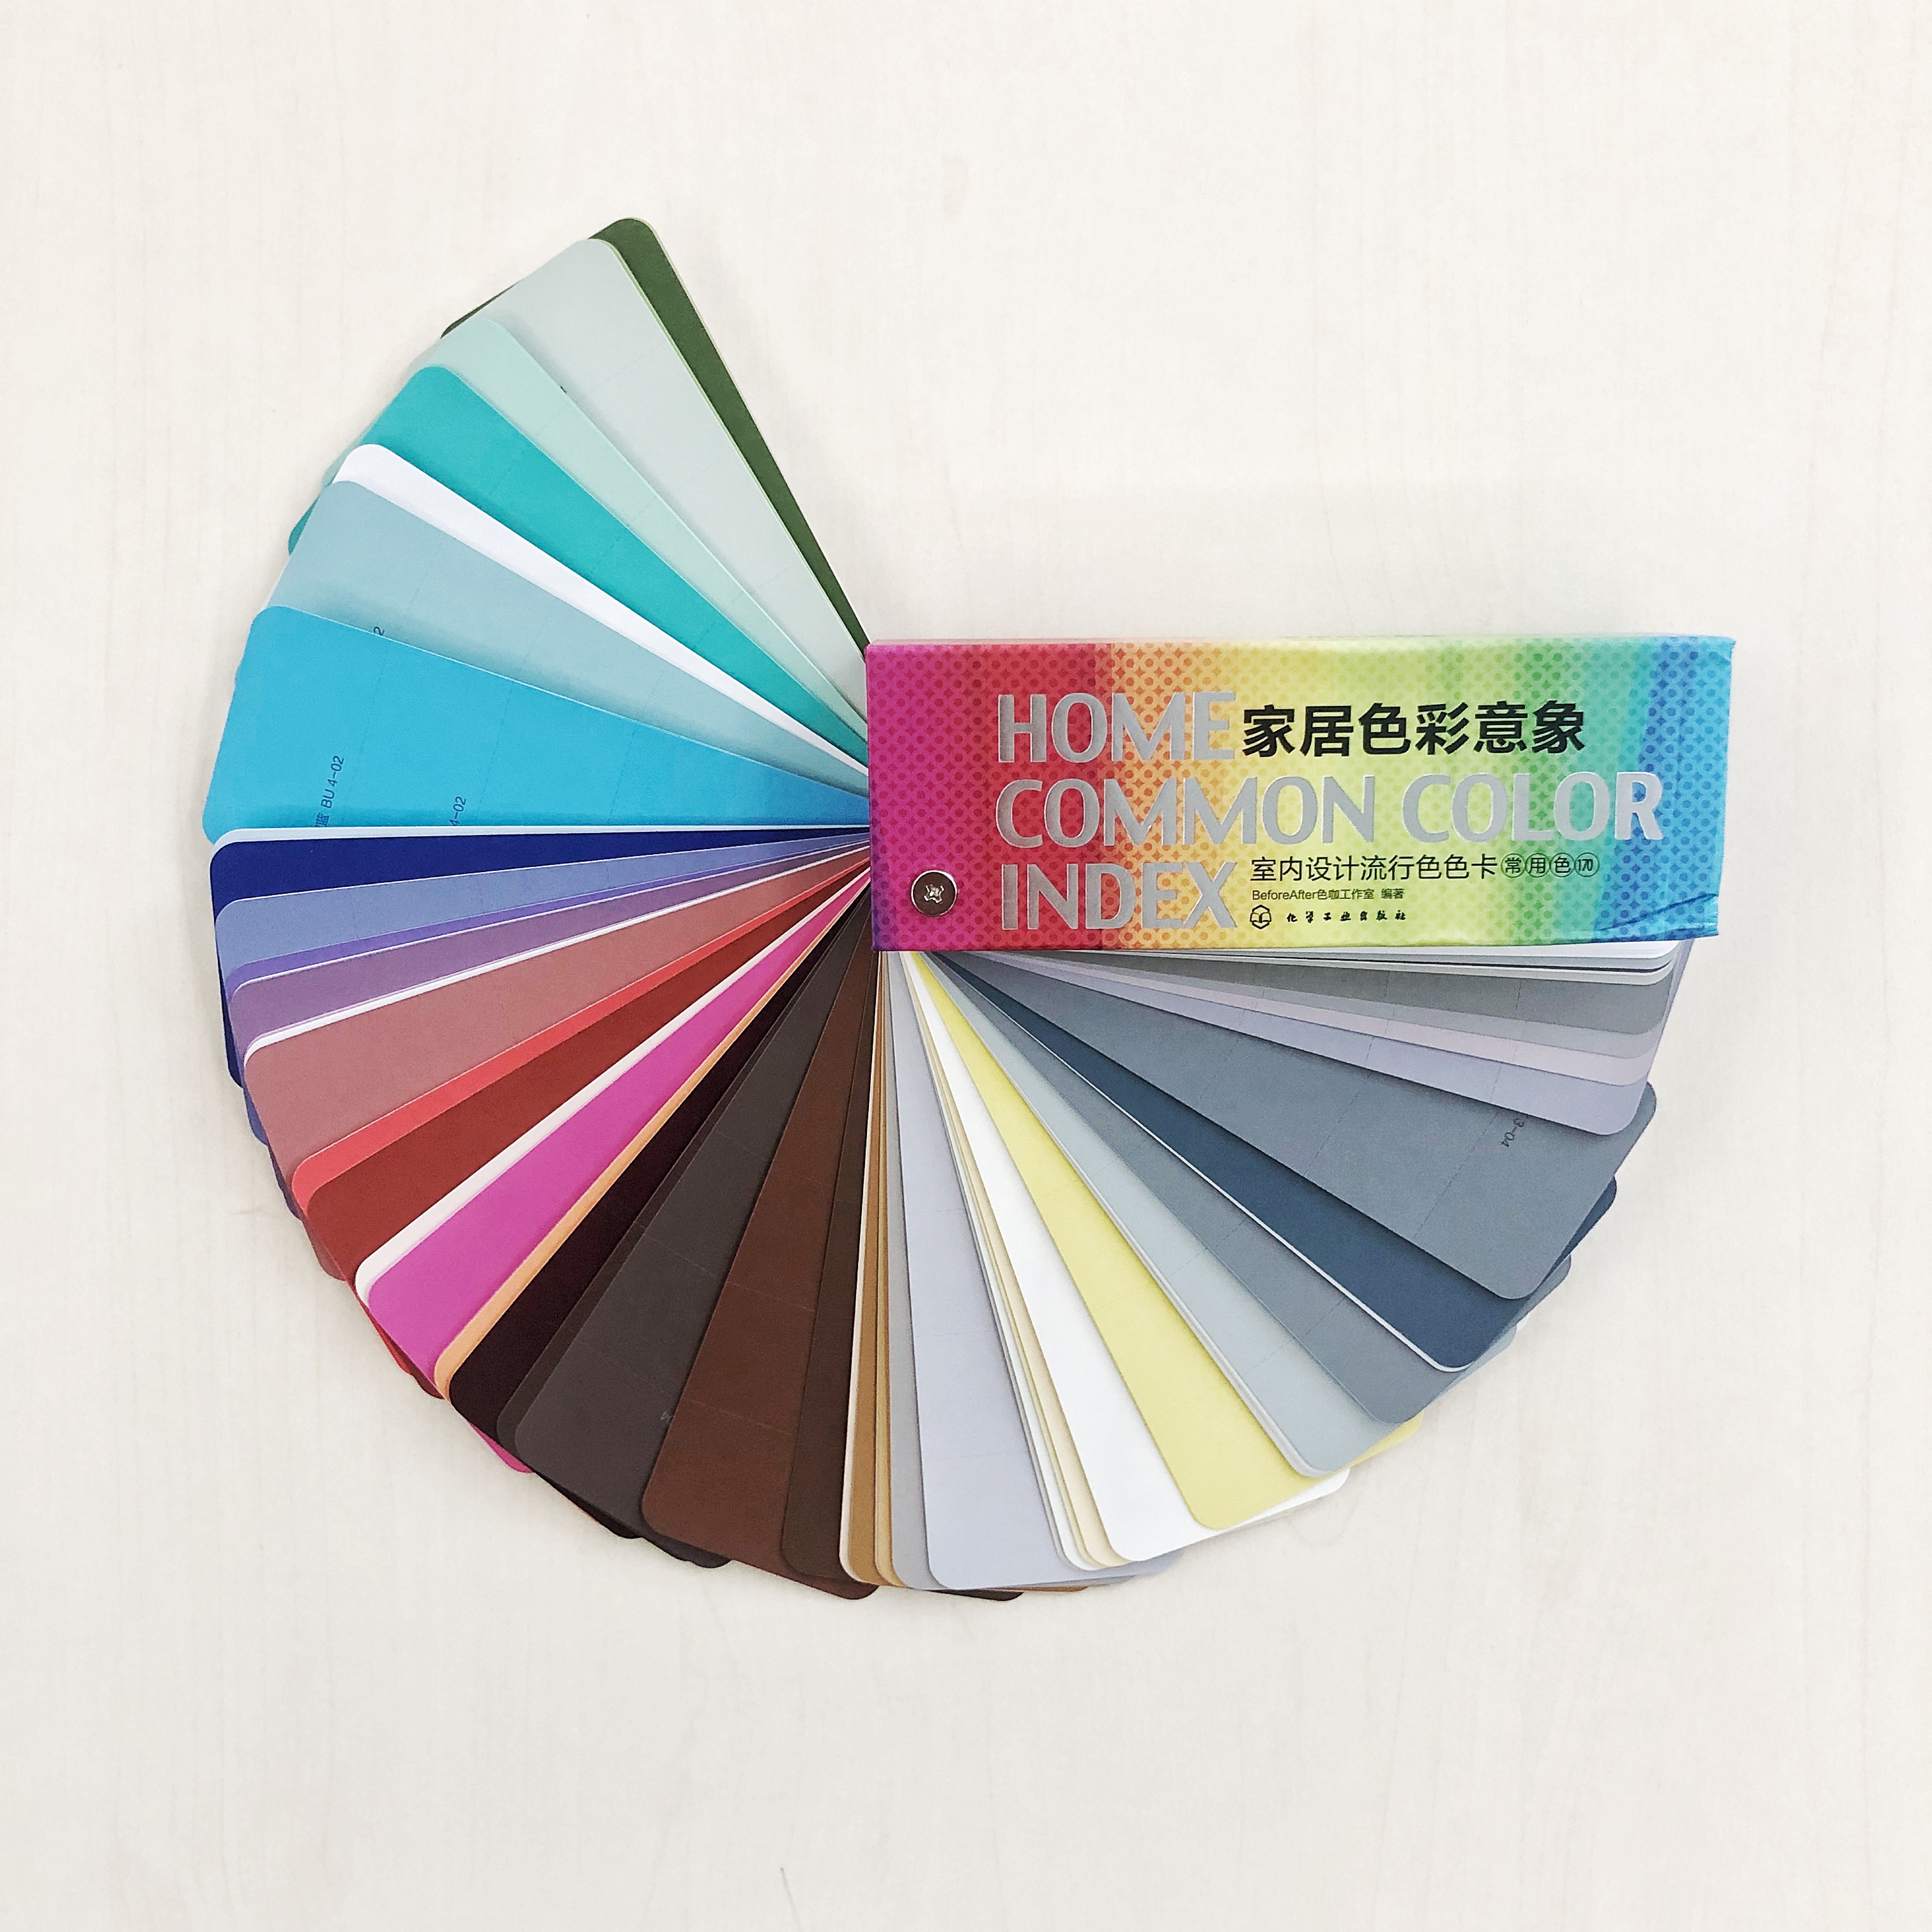 《家居色彩意象室内设计流行色色卡170色》——实物色卡与电子配色方案的完美结合